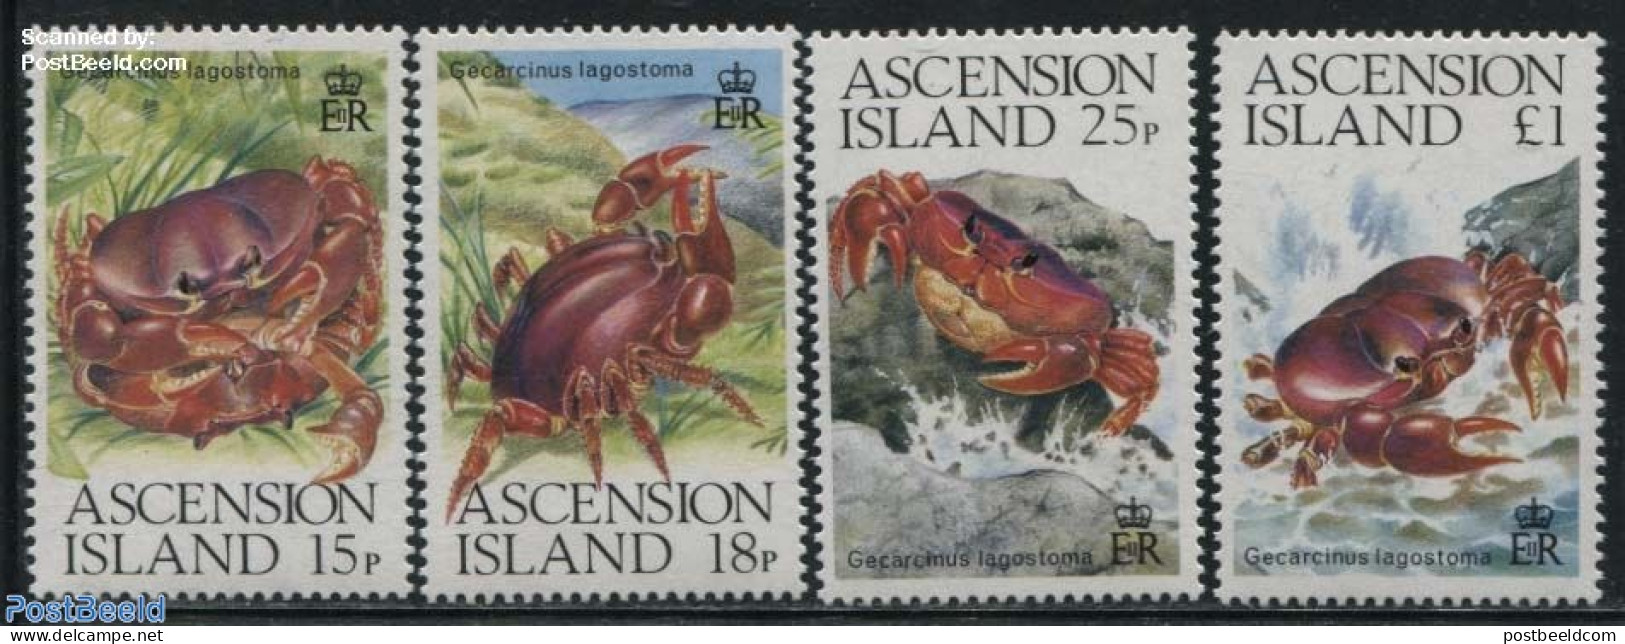 Ascension 1989 Crabs 4v, Mint NH, Nature - Shells & Crustaceans - Crabs And Lobsters - Mundo Aquatico